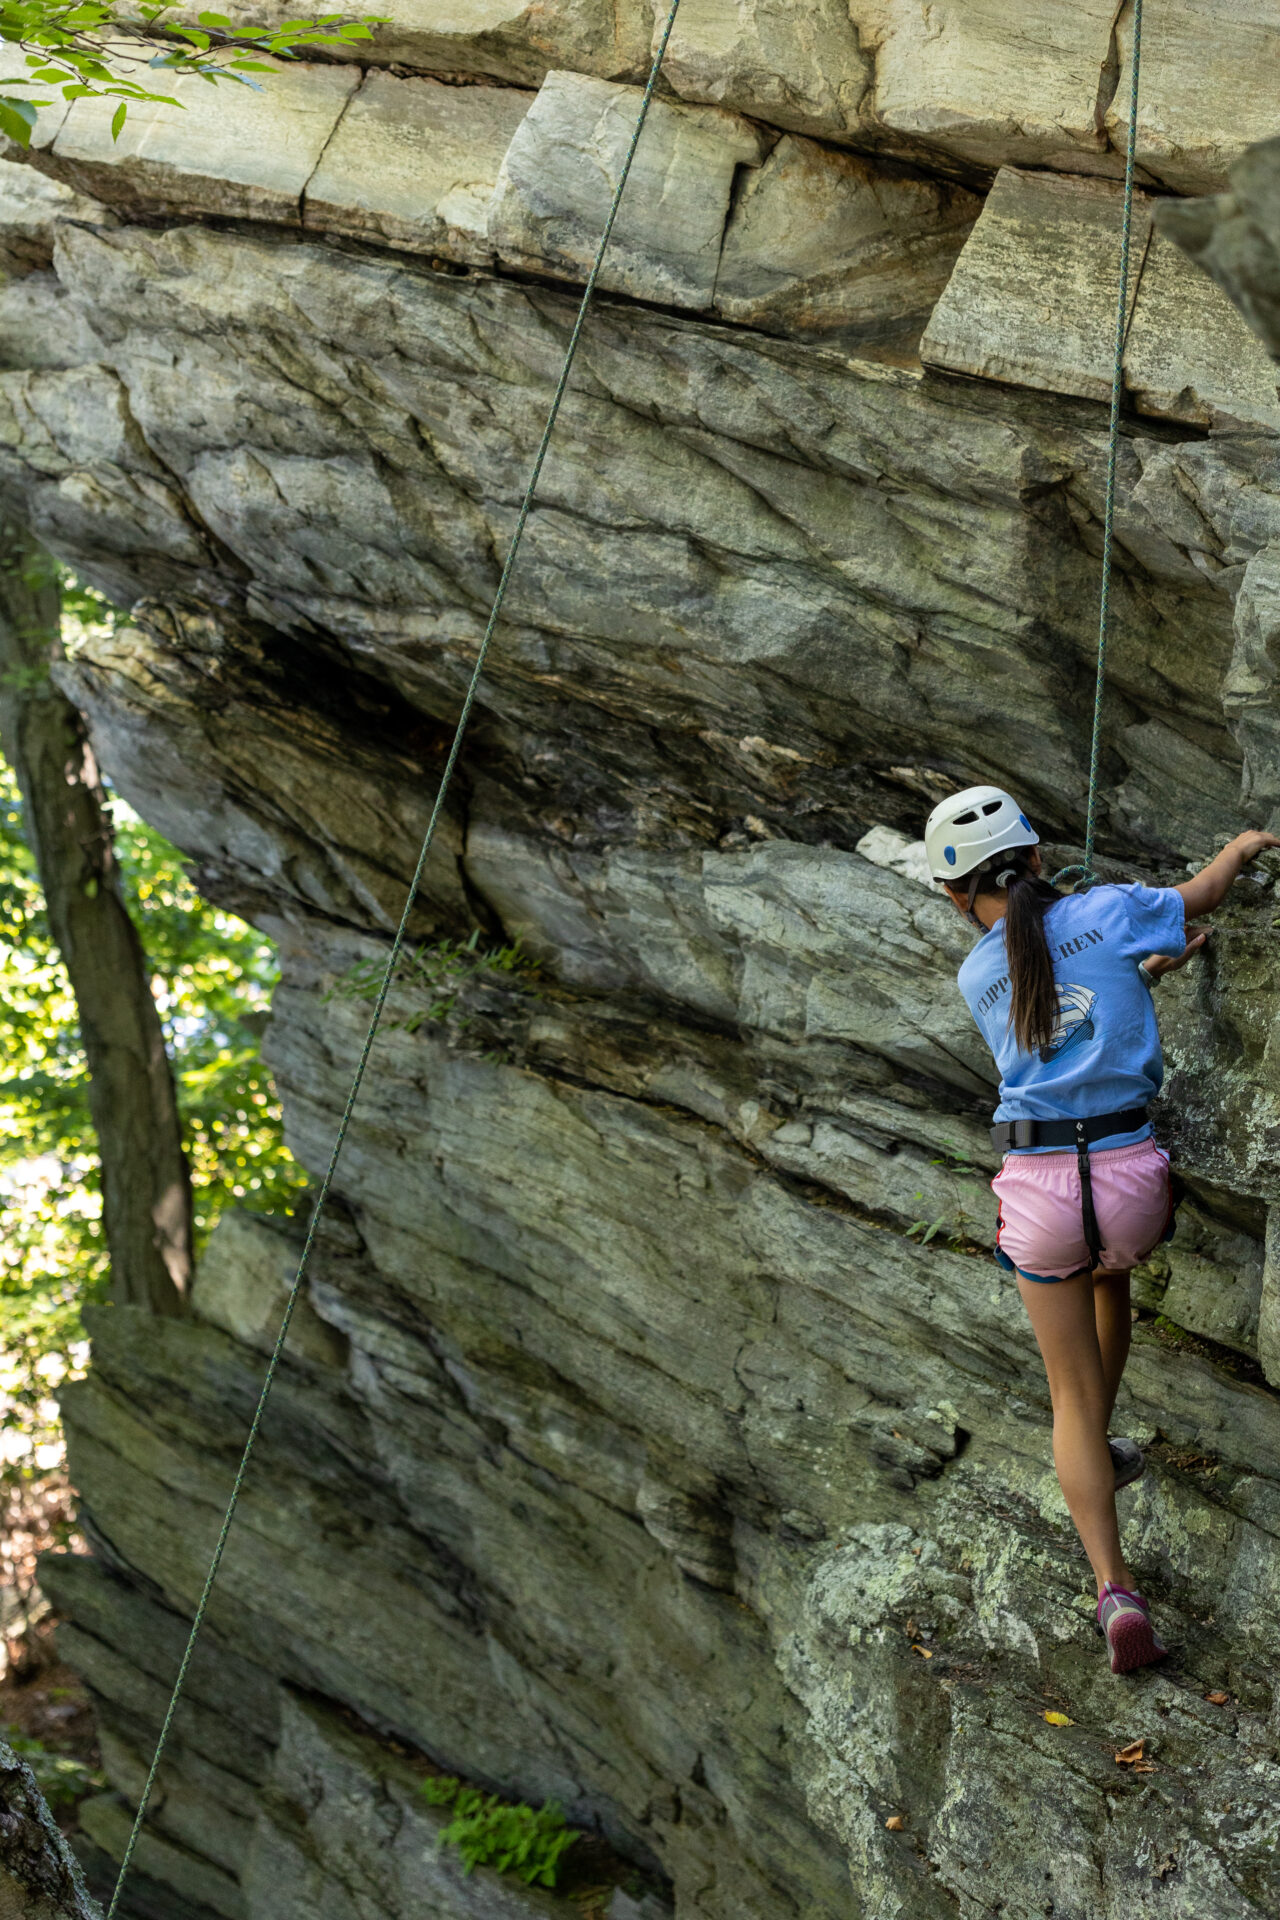 Using her BearTrax gear, a woman fearlessly climbs up a treacherous cliff.